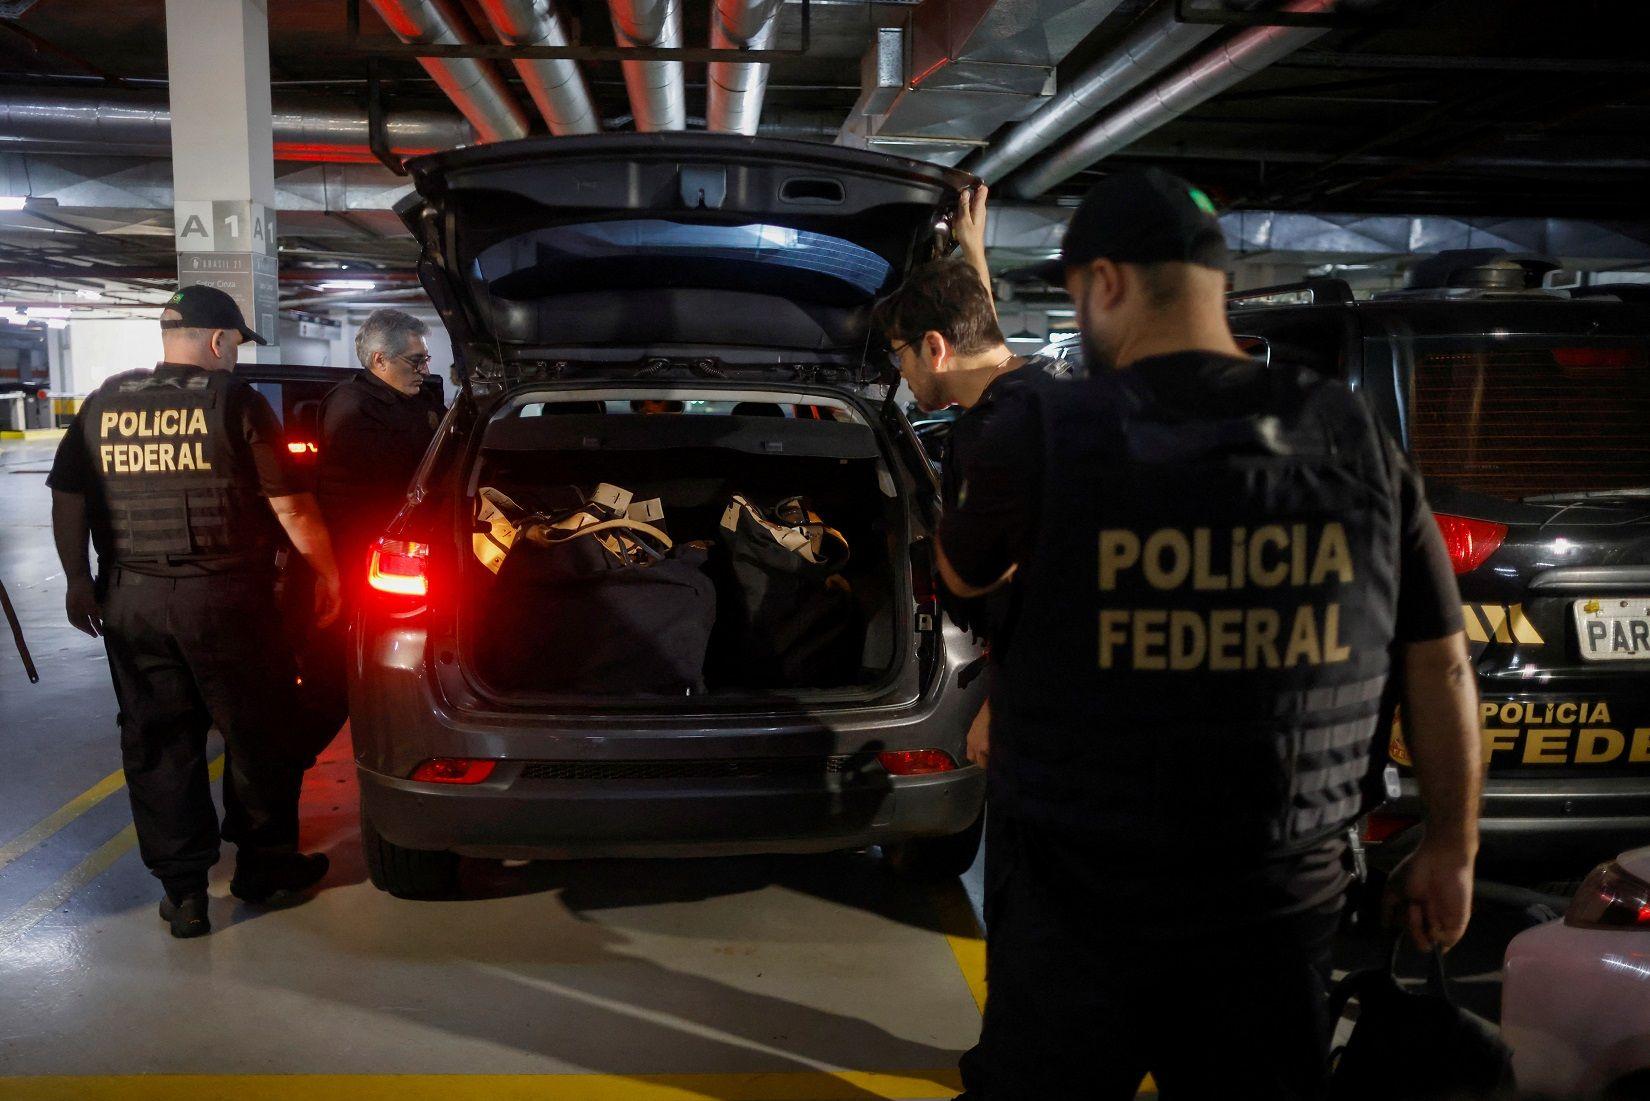 Policiais em volta de carro, que tem porta-malas cheio de malas com apreensões